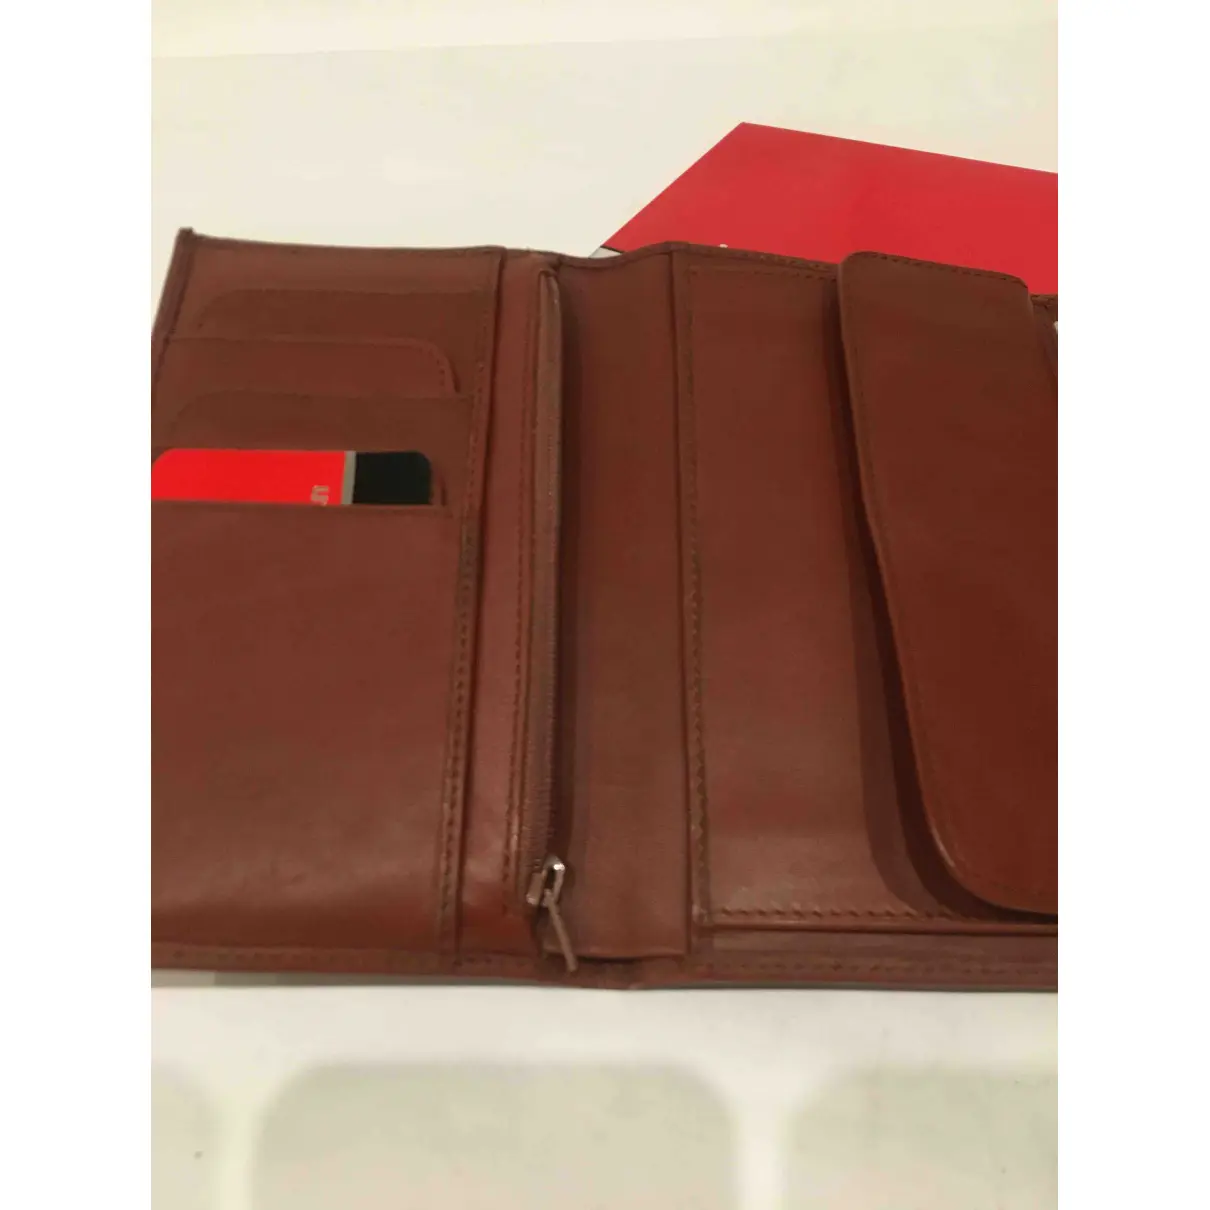 Leather wallet Pierre Cardin